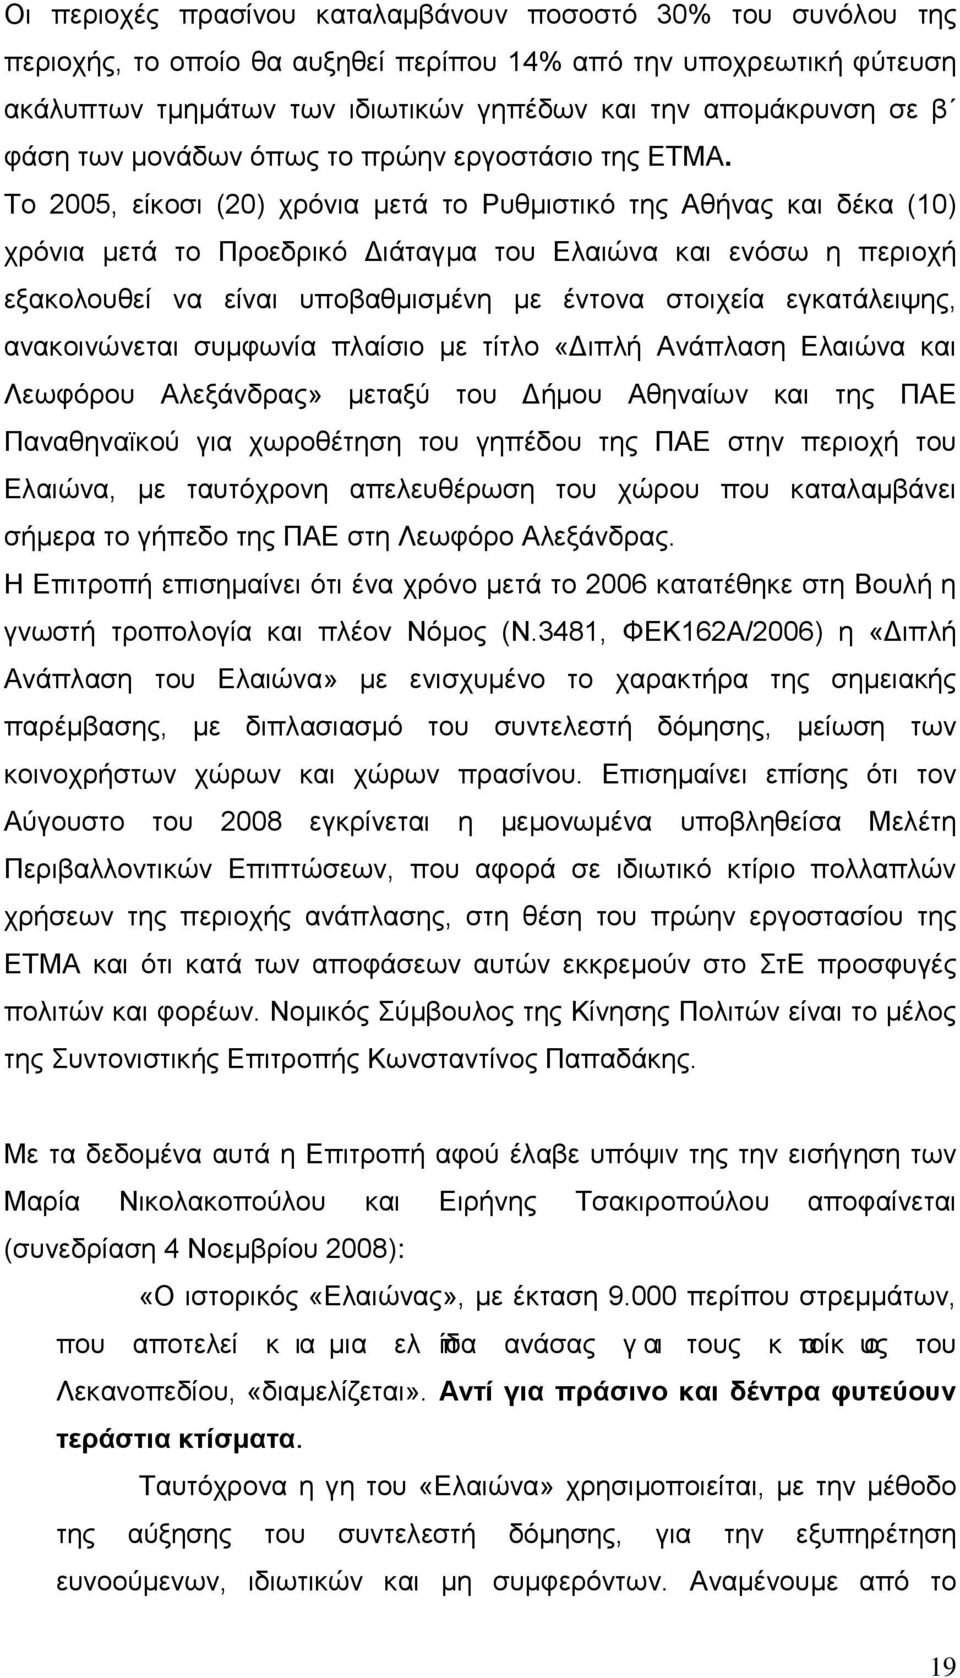 Το 2005, είκοσι (20) χρόνια μετά το Ρυθμιστικό της Αθήνας και δέκα (10) χρόνια μετά το Προεδρικό Διάταγμα του Ελαιώνα και ενόσω η περιοχή εξακολουθεί να είναι υποβαθμισμένη με έντονα στοιχεία